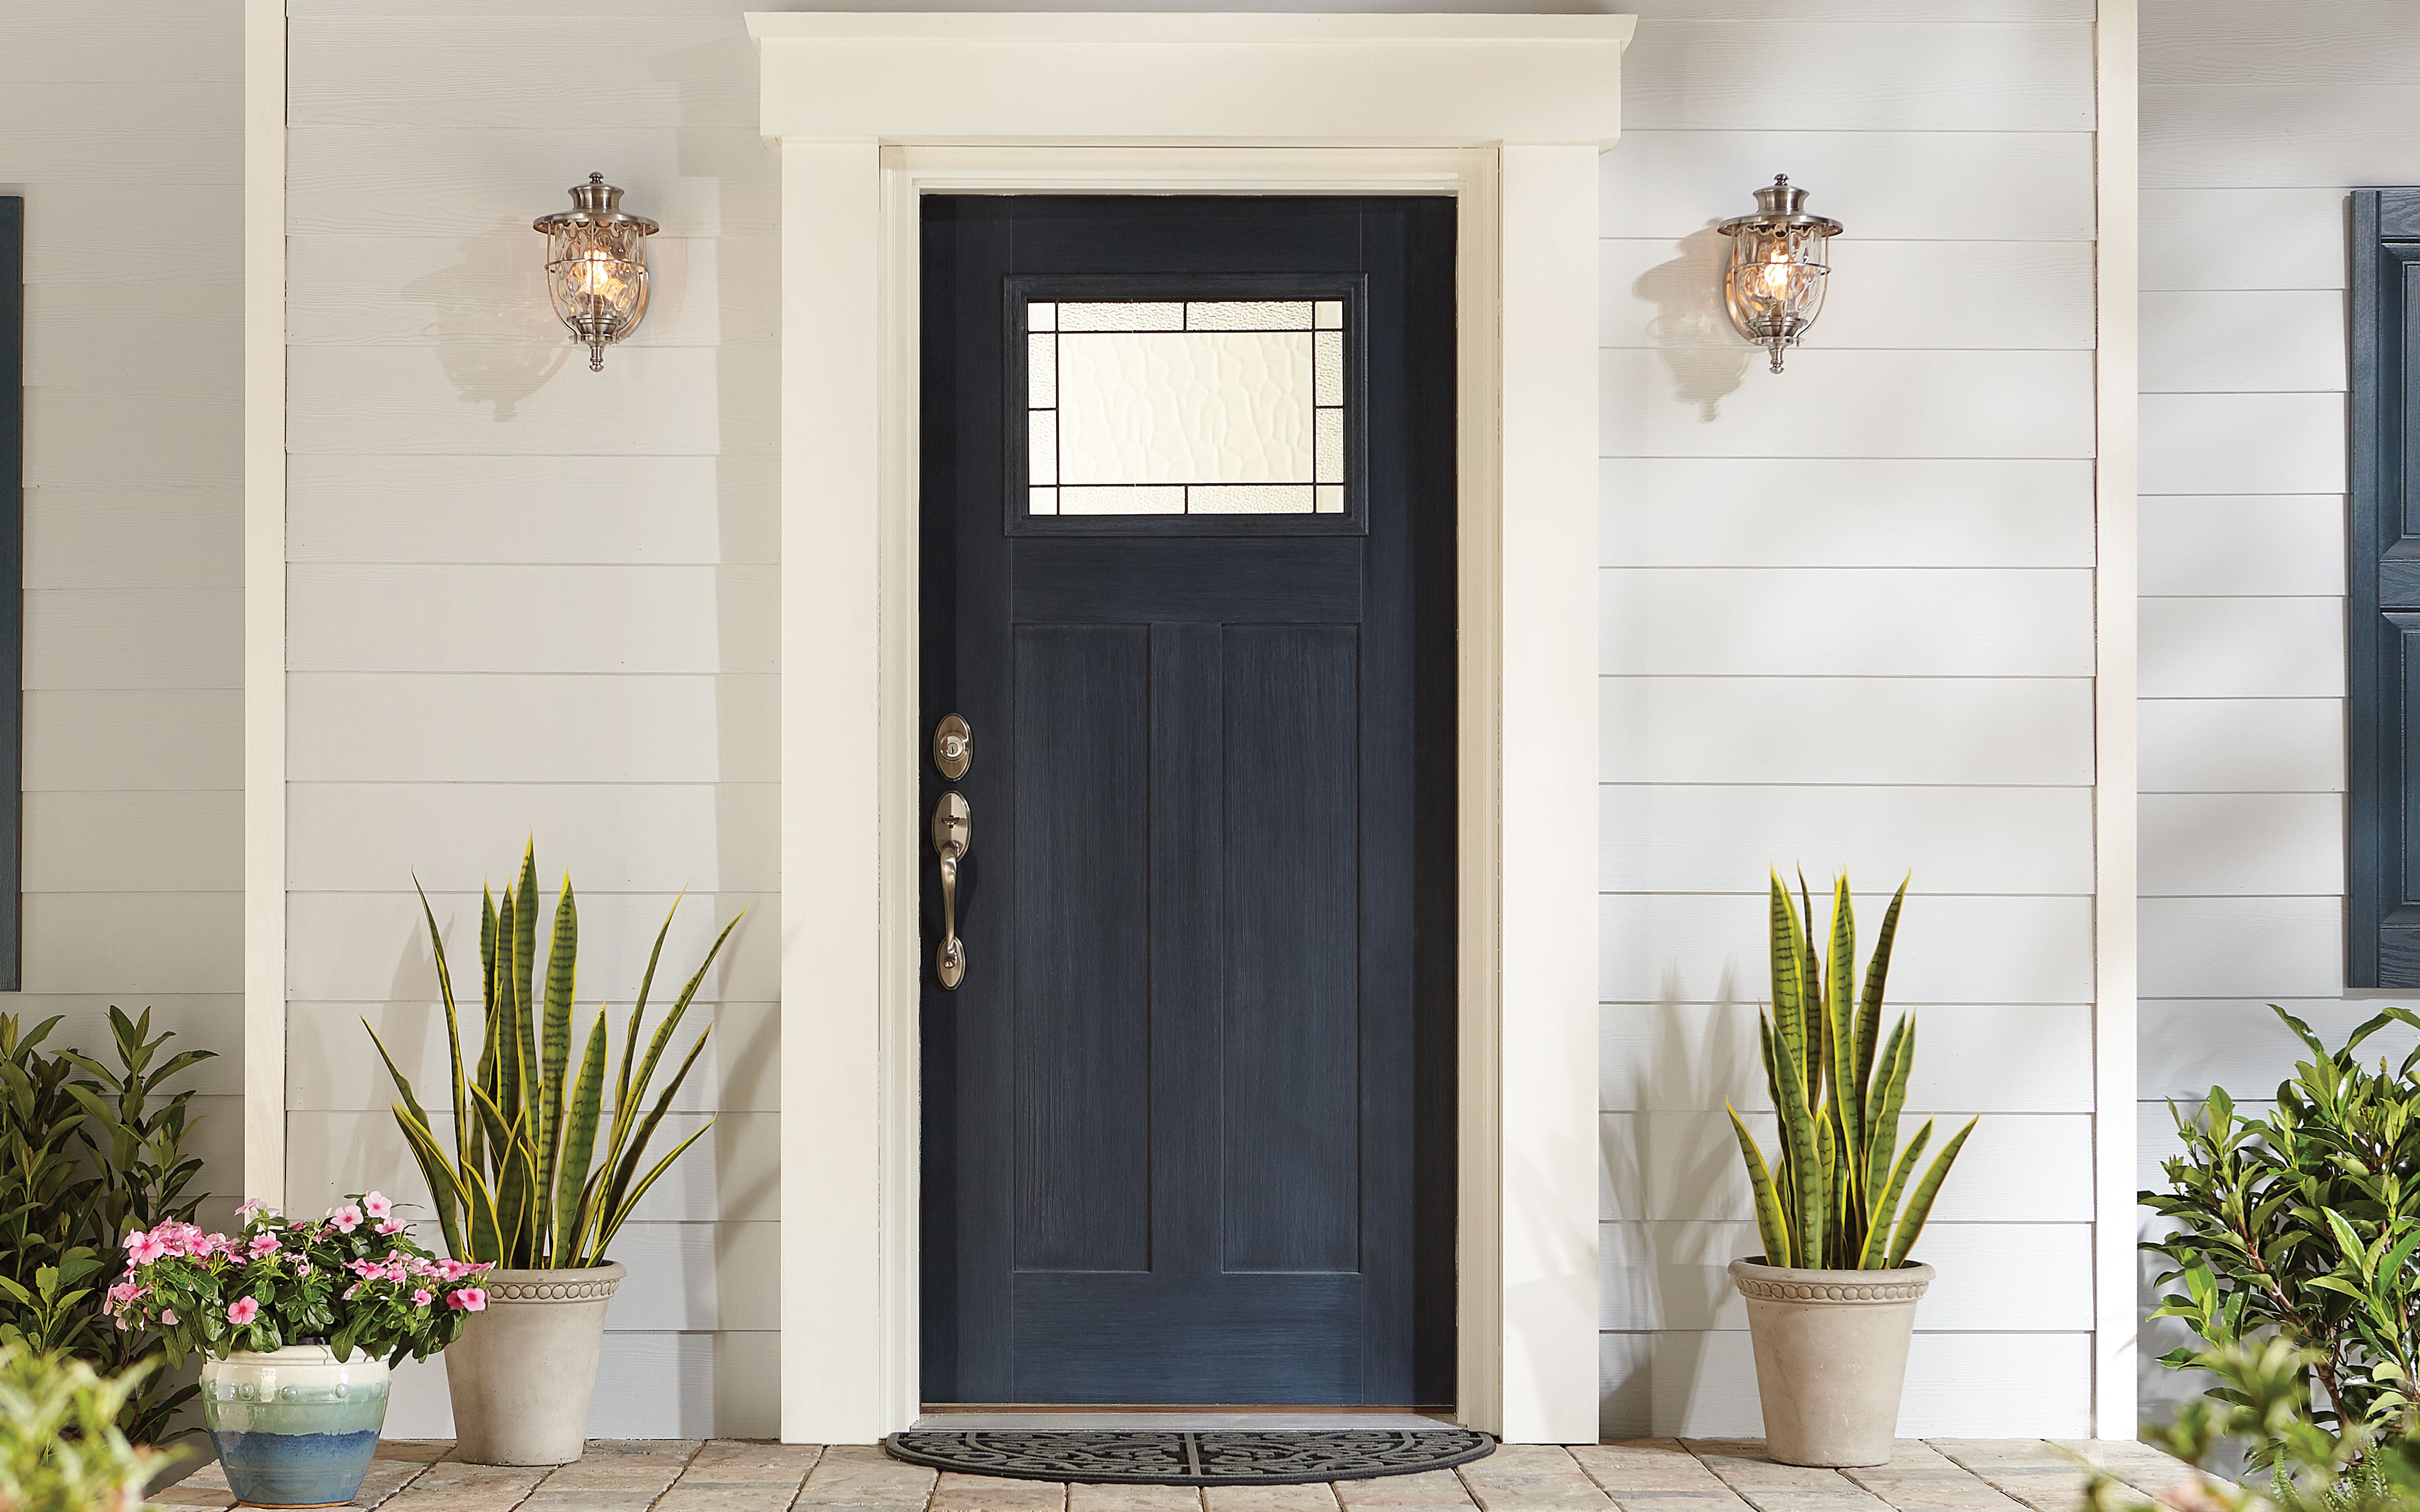 How to Buy an Exterior Door? 